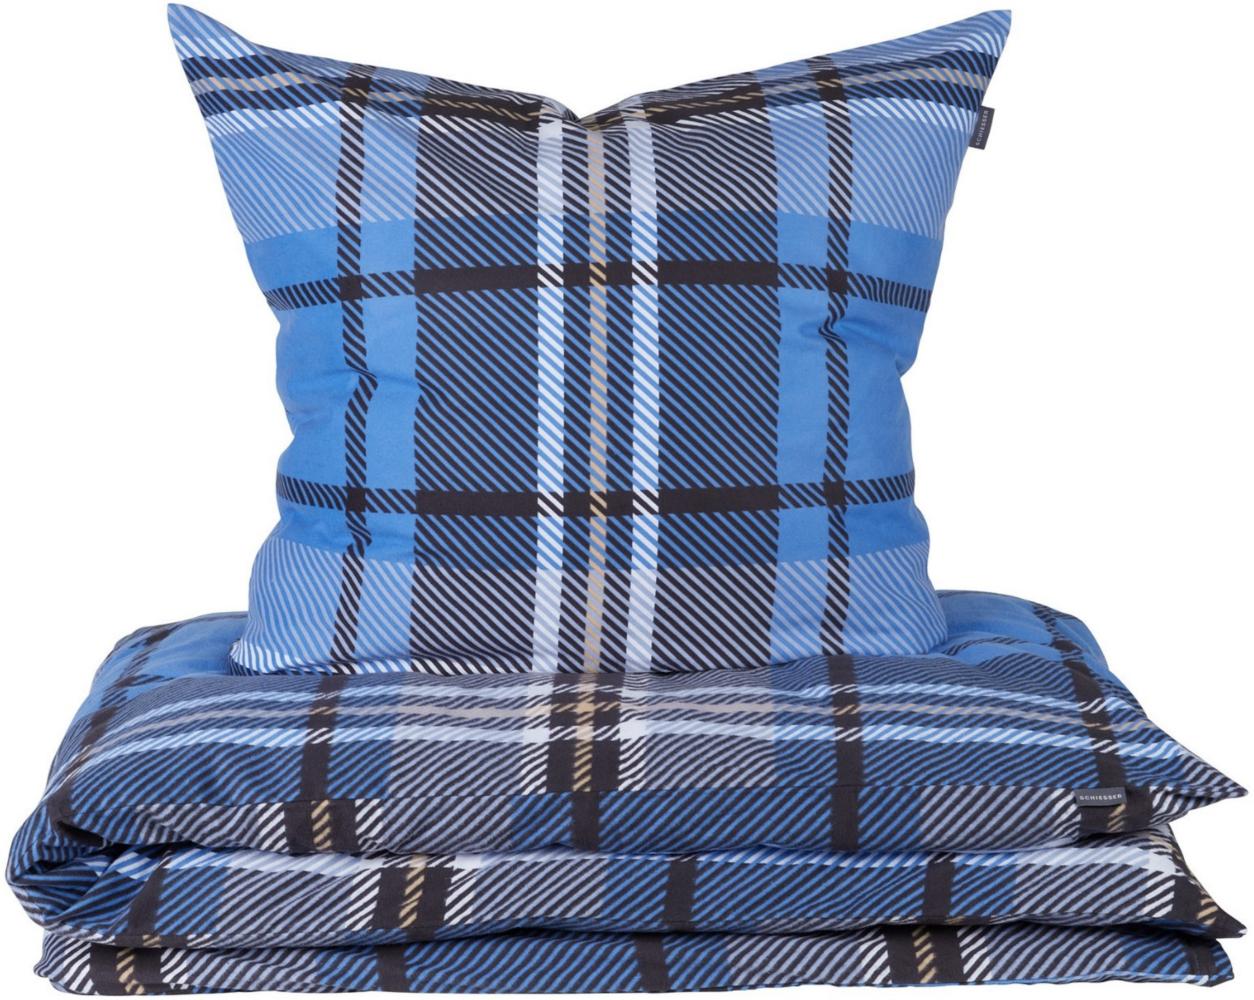 Schiesser Feinbiber Bettwäsche Set Borro aus weicher, wärmender Baumwolle, Farbe:Blau und Grau, Größe:135 cm x 200 cm Bild 1